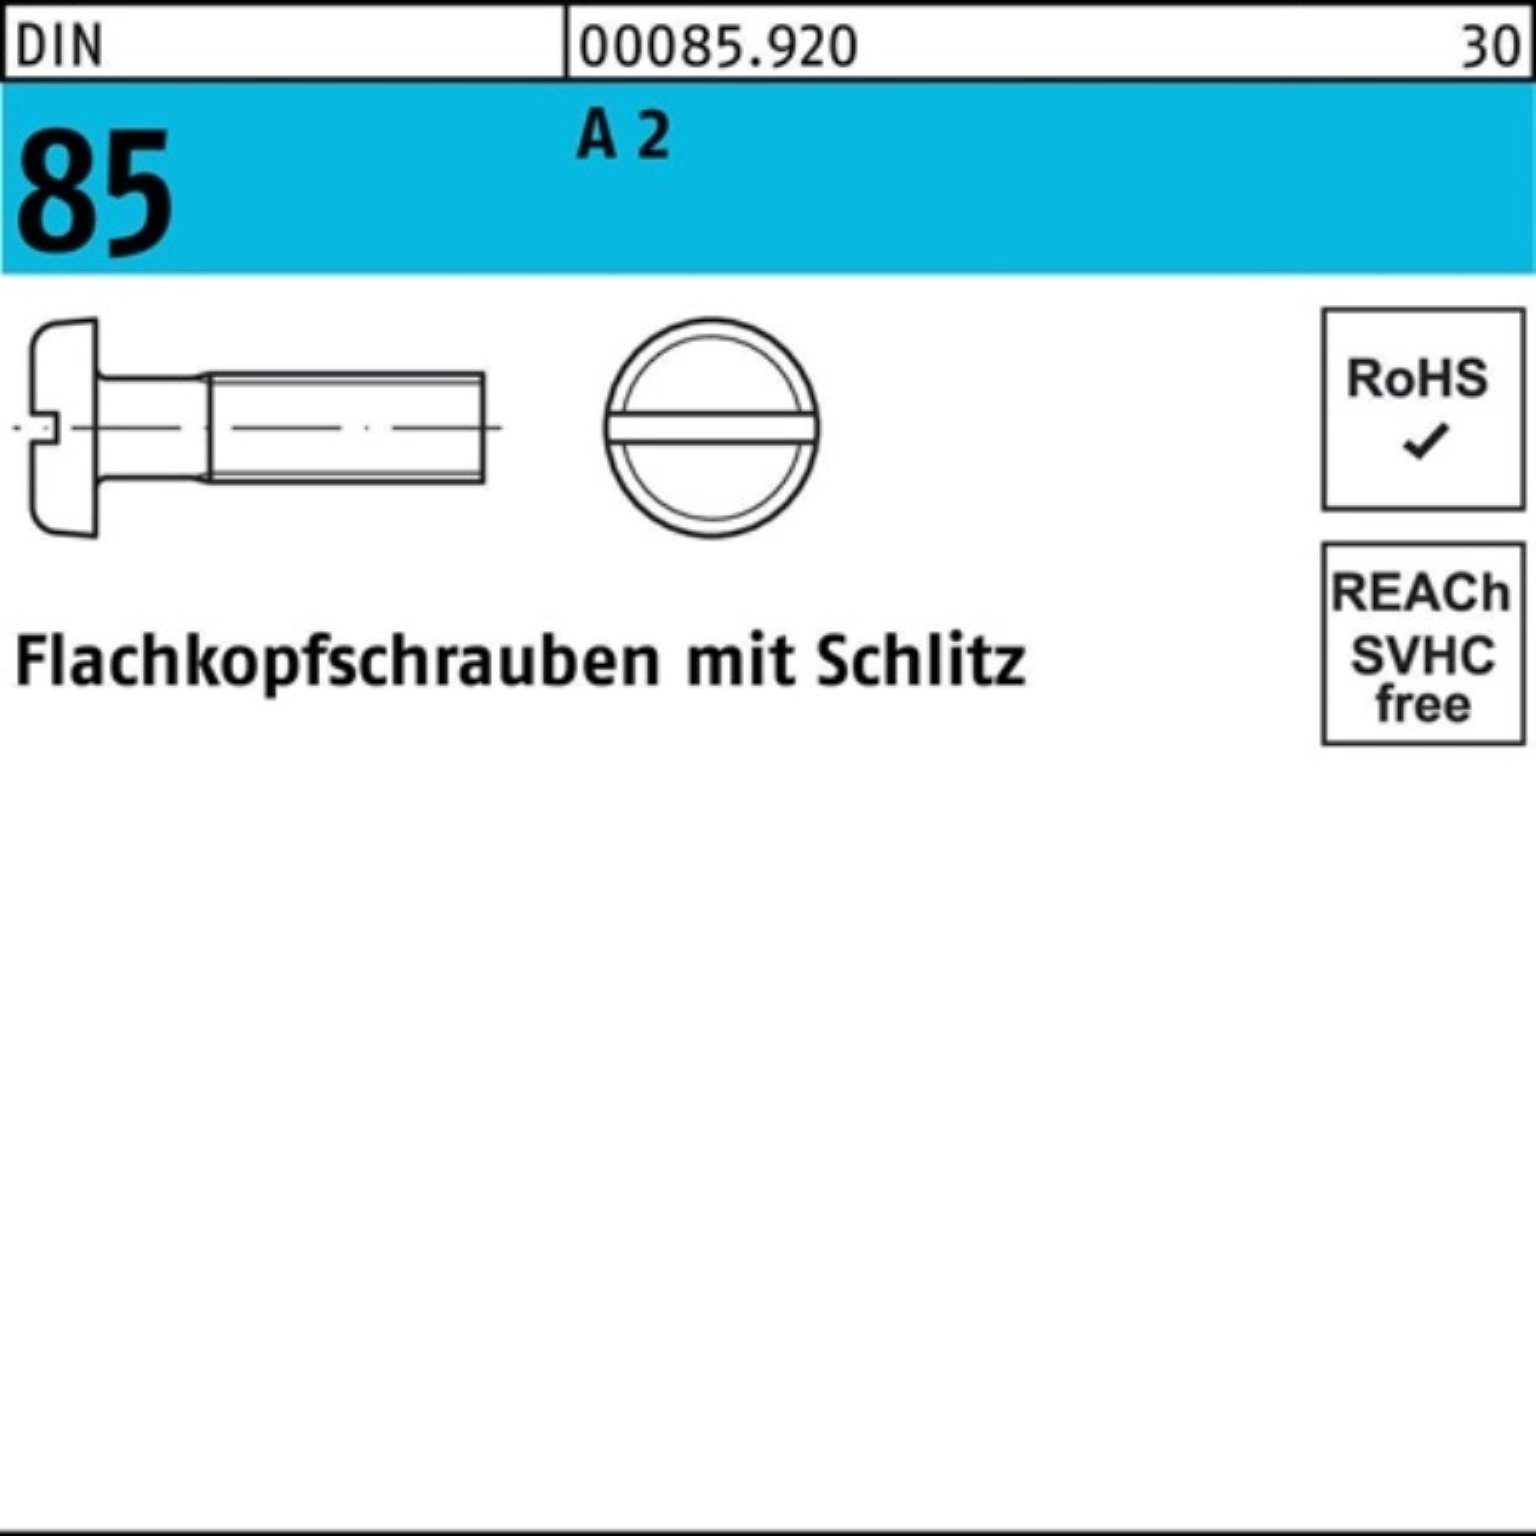 A M4x 1580 Schraube Pack 12 Reyher Flachkopfschraube Schlitz 85/ISO 2 1000 DIN 1000er